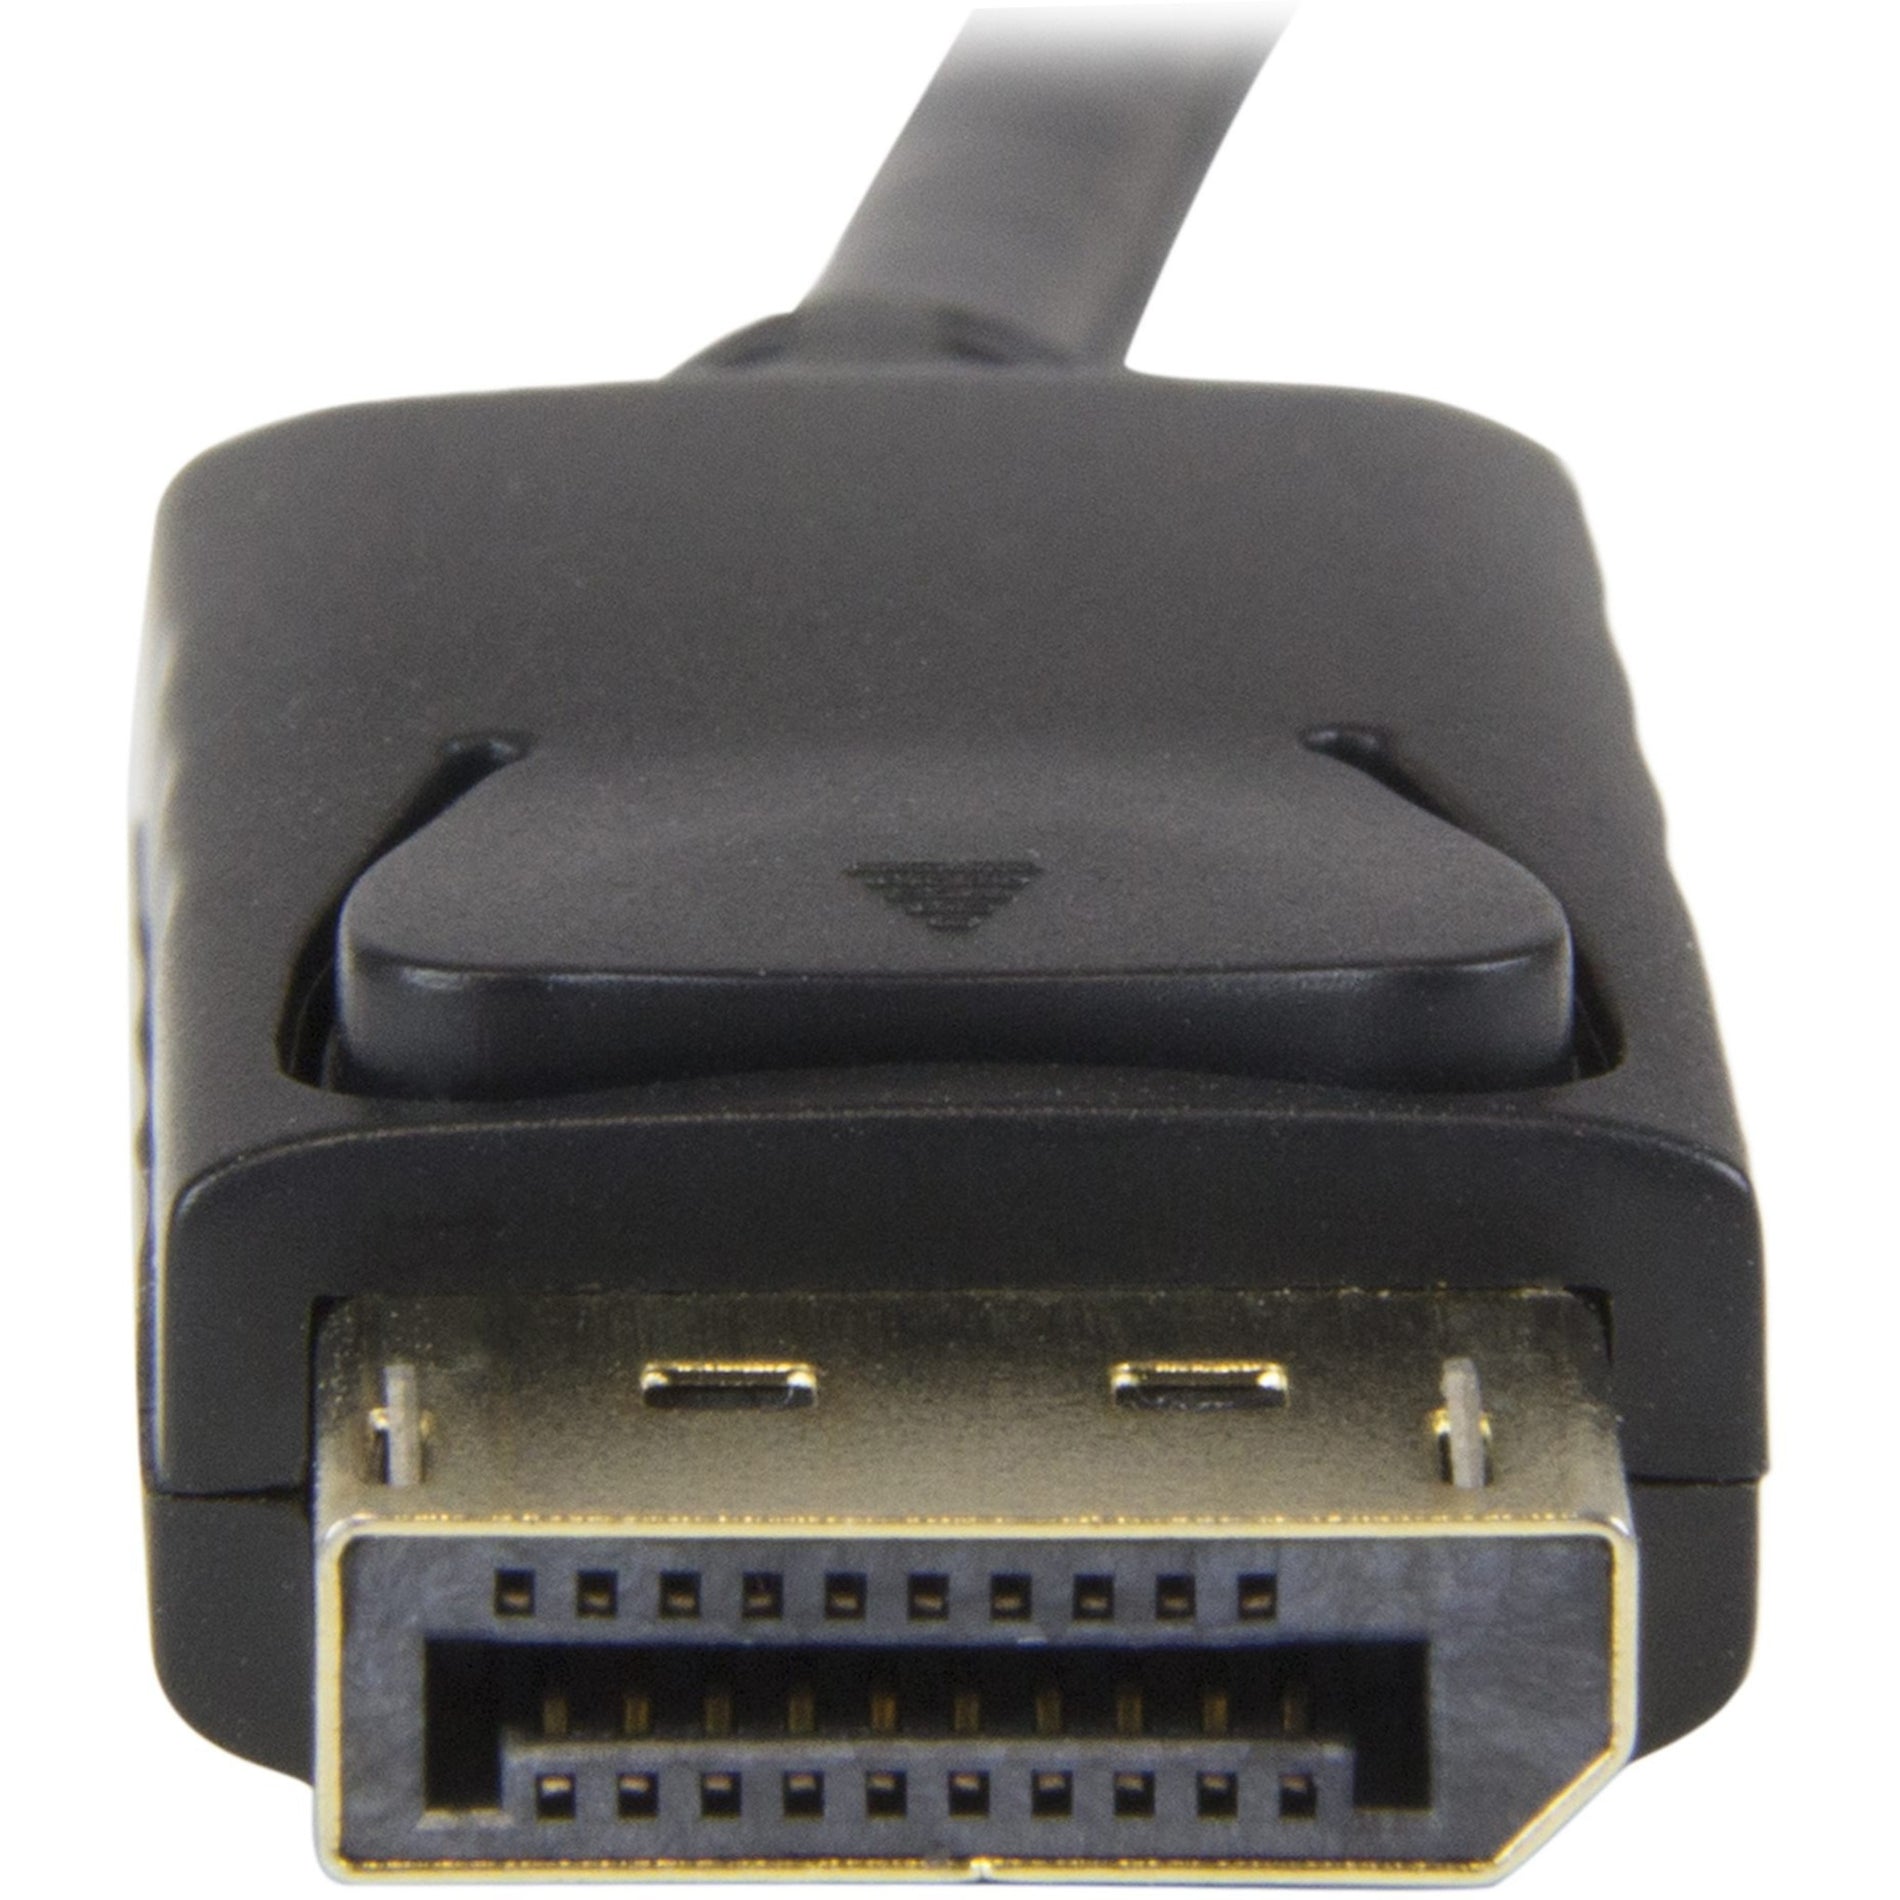 Cable de conversor DisplayPort a HDMI StarTech.com DP2HDMM2MB - 6 pies (2m) - 4K Elimine el Desorden Conectando su PC Directamente a un Monitor HDMI